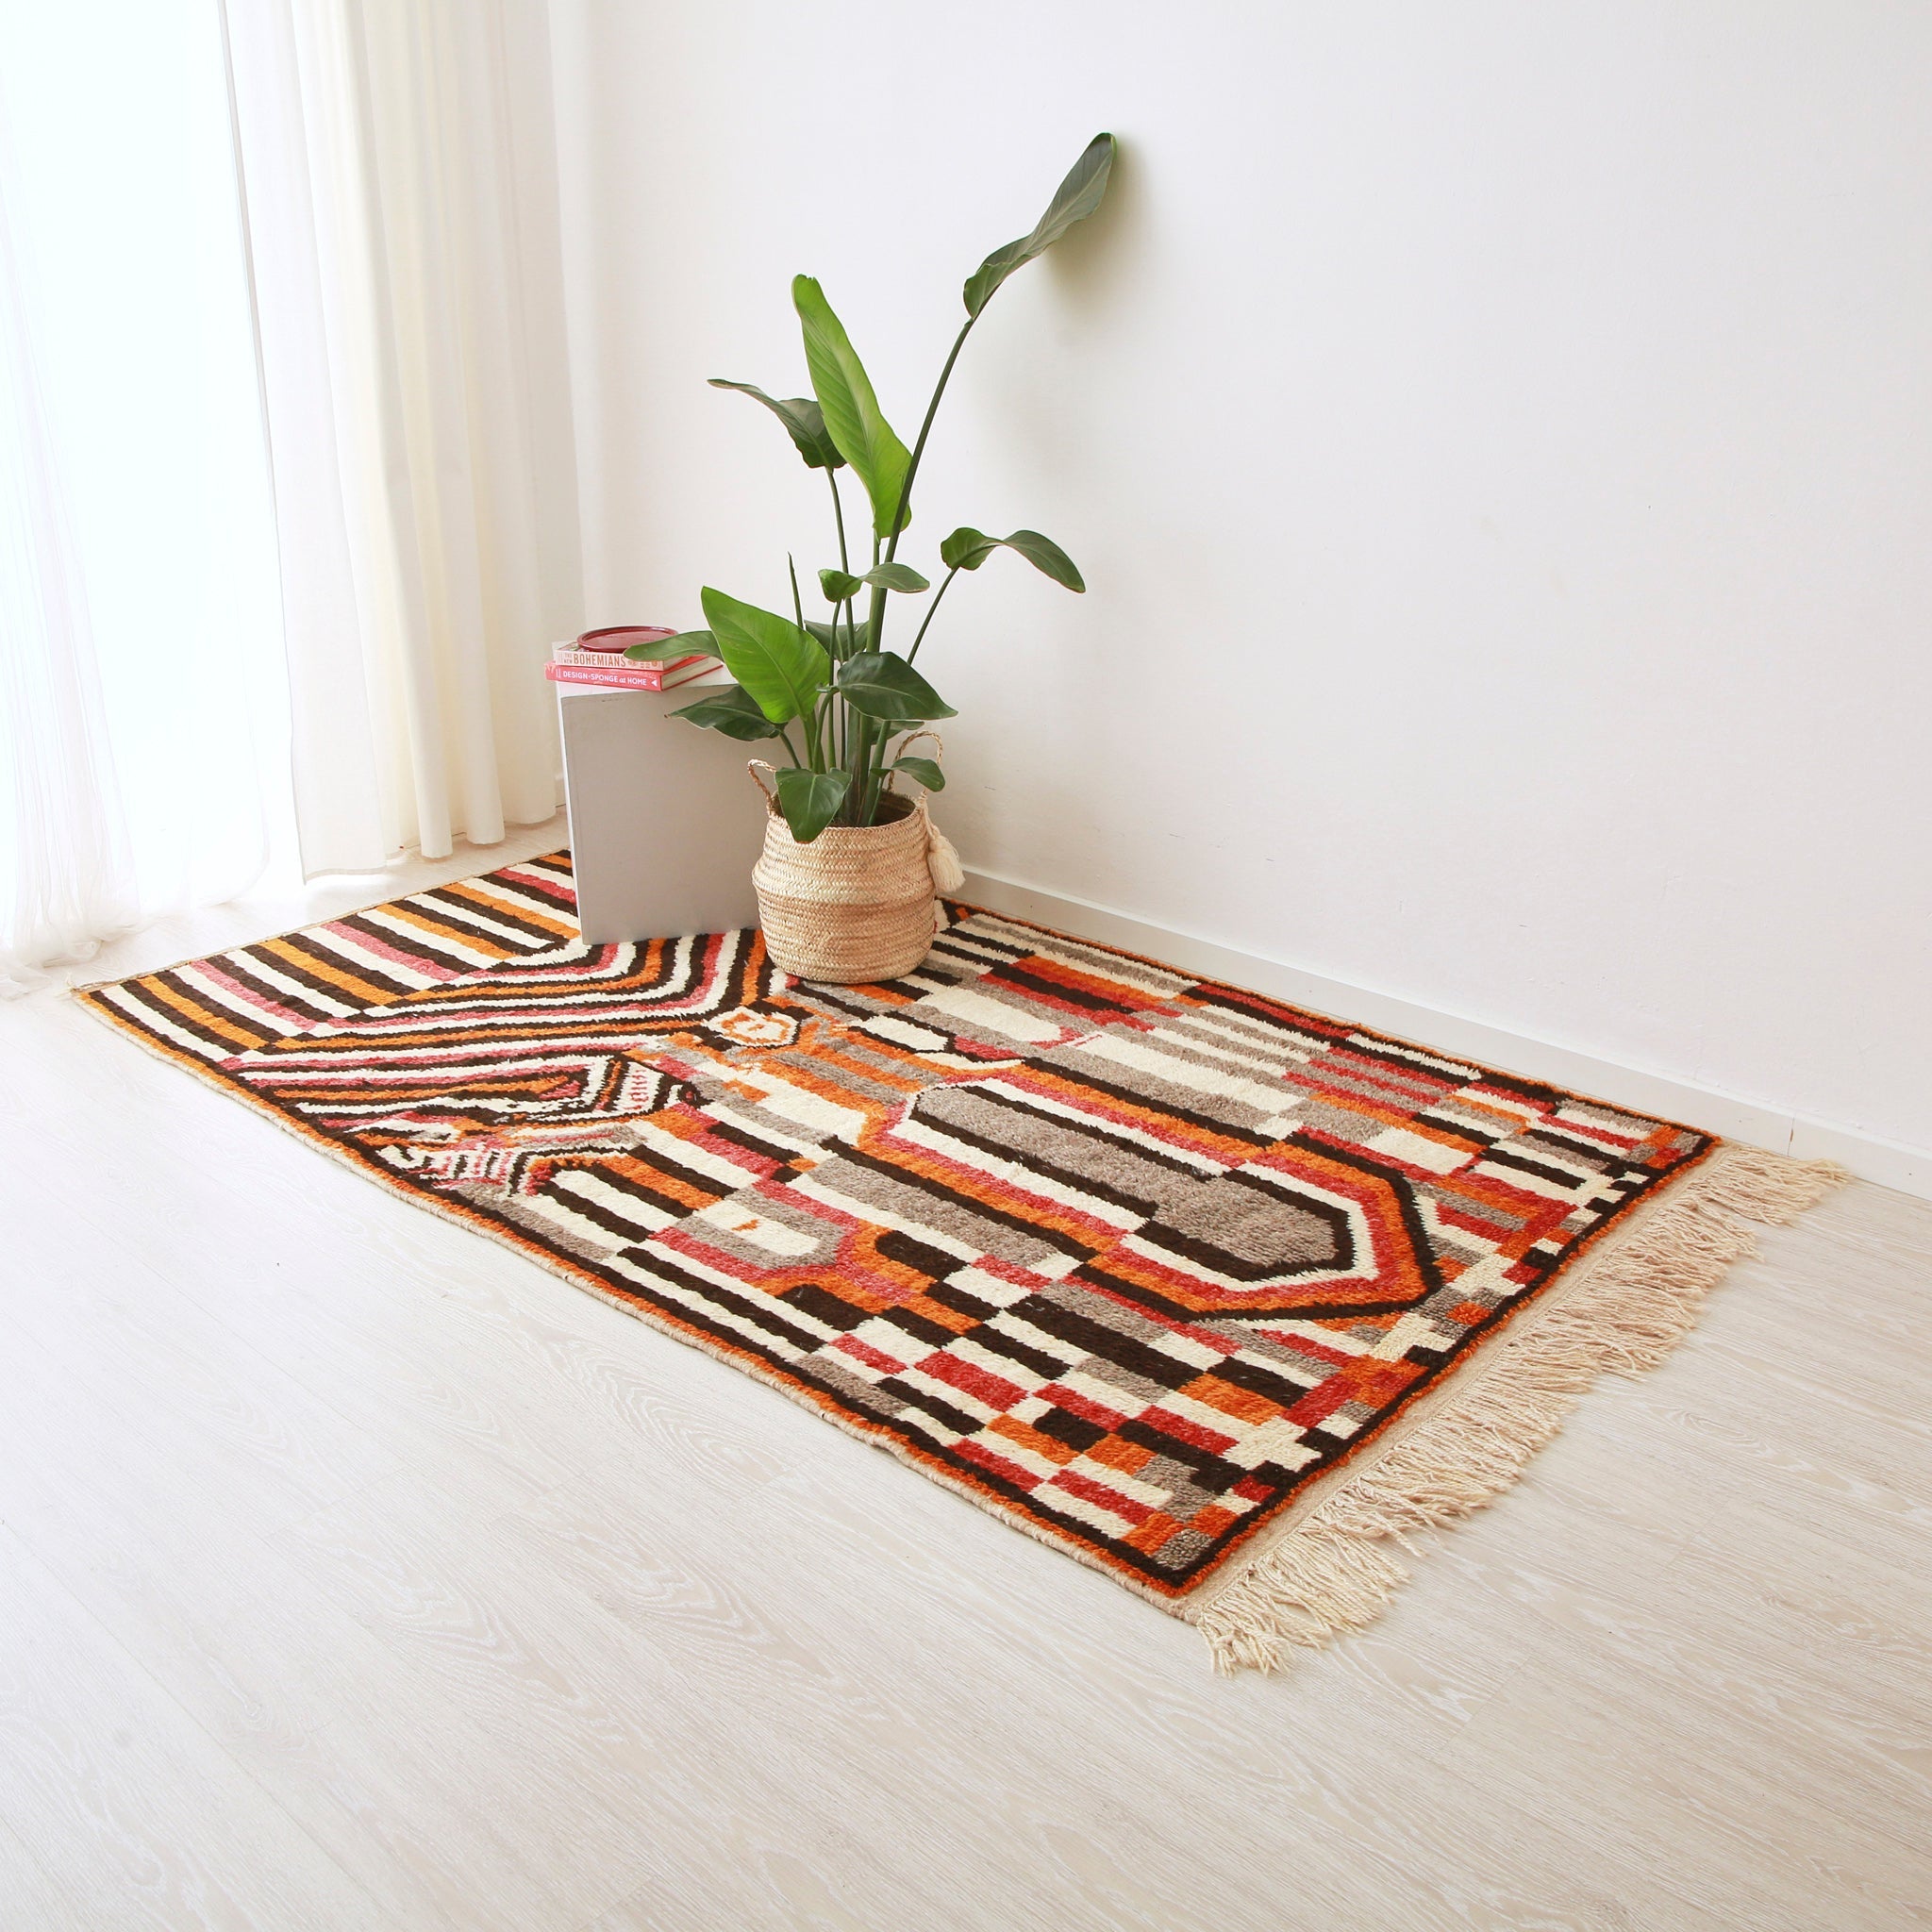 tappeto stile azilal con disegni geometrici che creano una fitta trama di forme dal colore nero, rosso, arancione bianco e grigio disteso sul pavimento